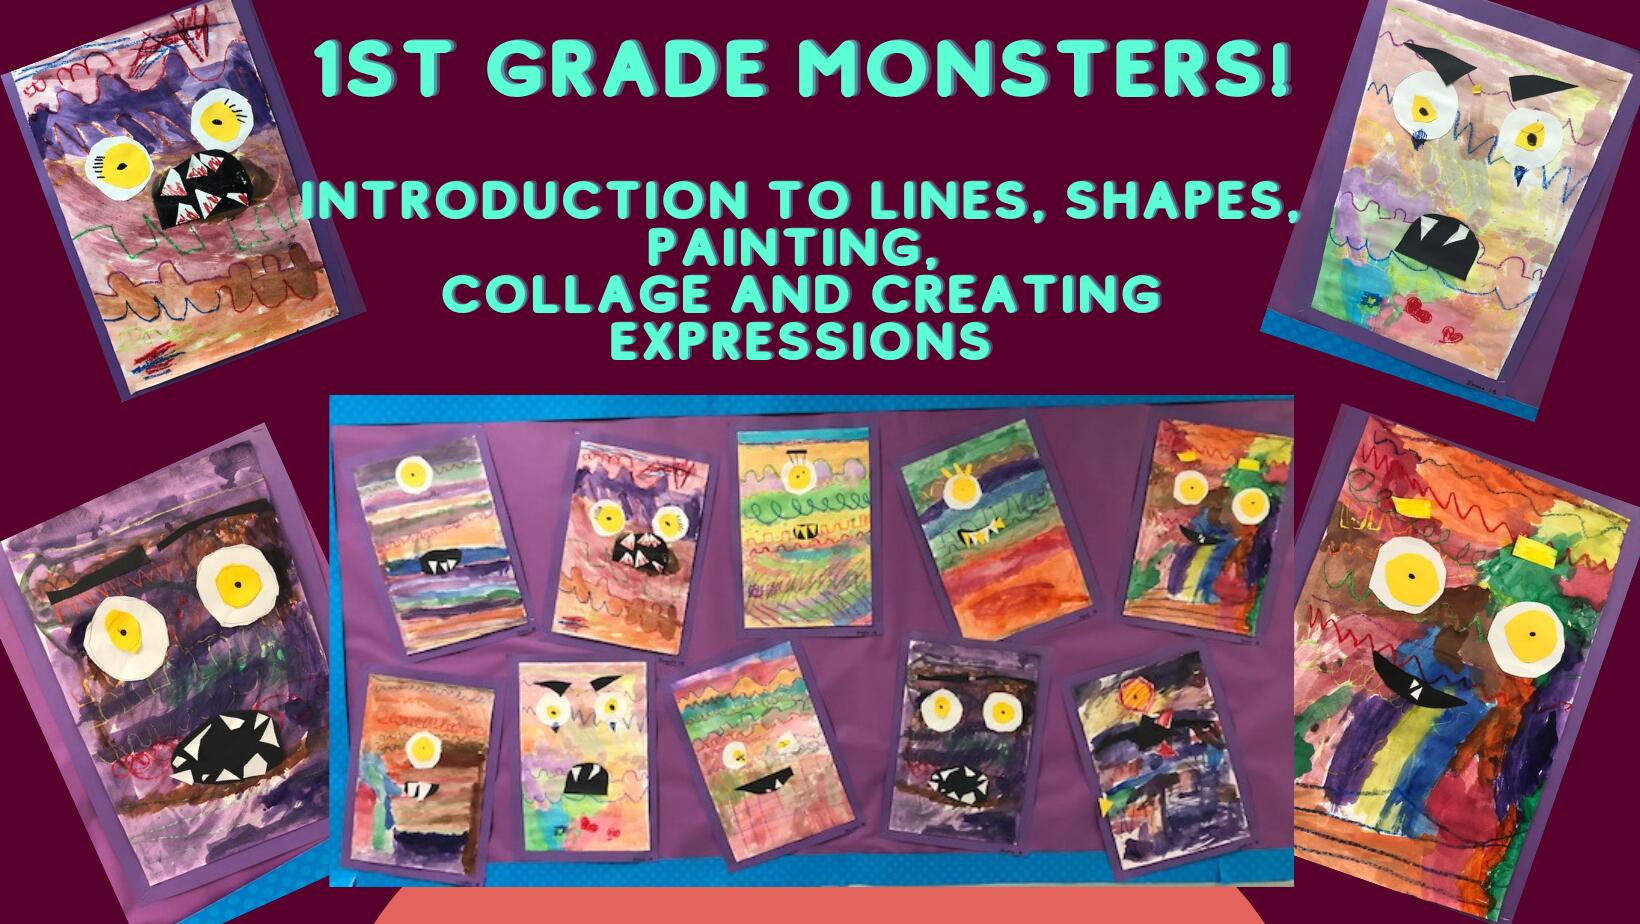 1st Grade Monster Art